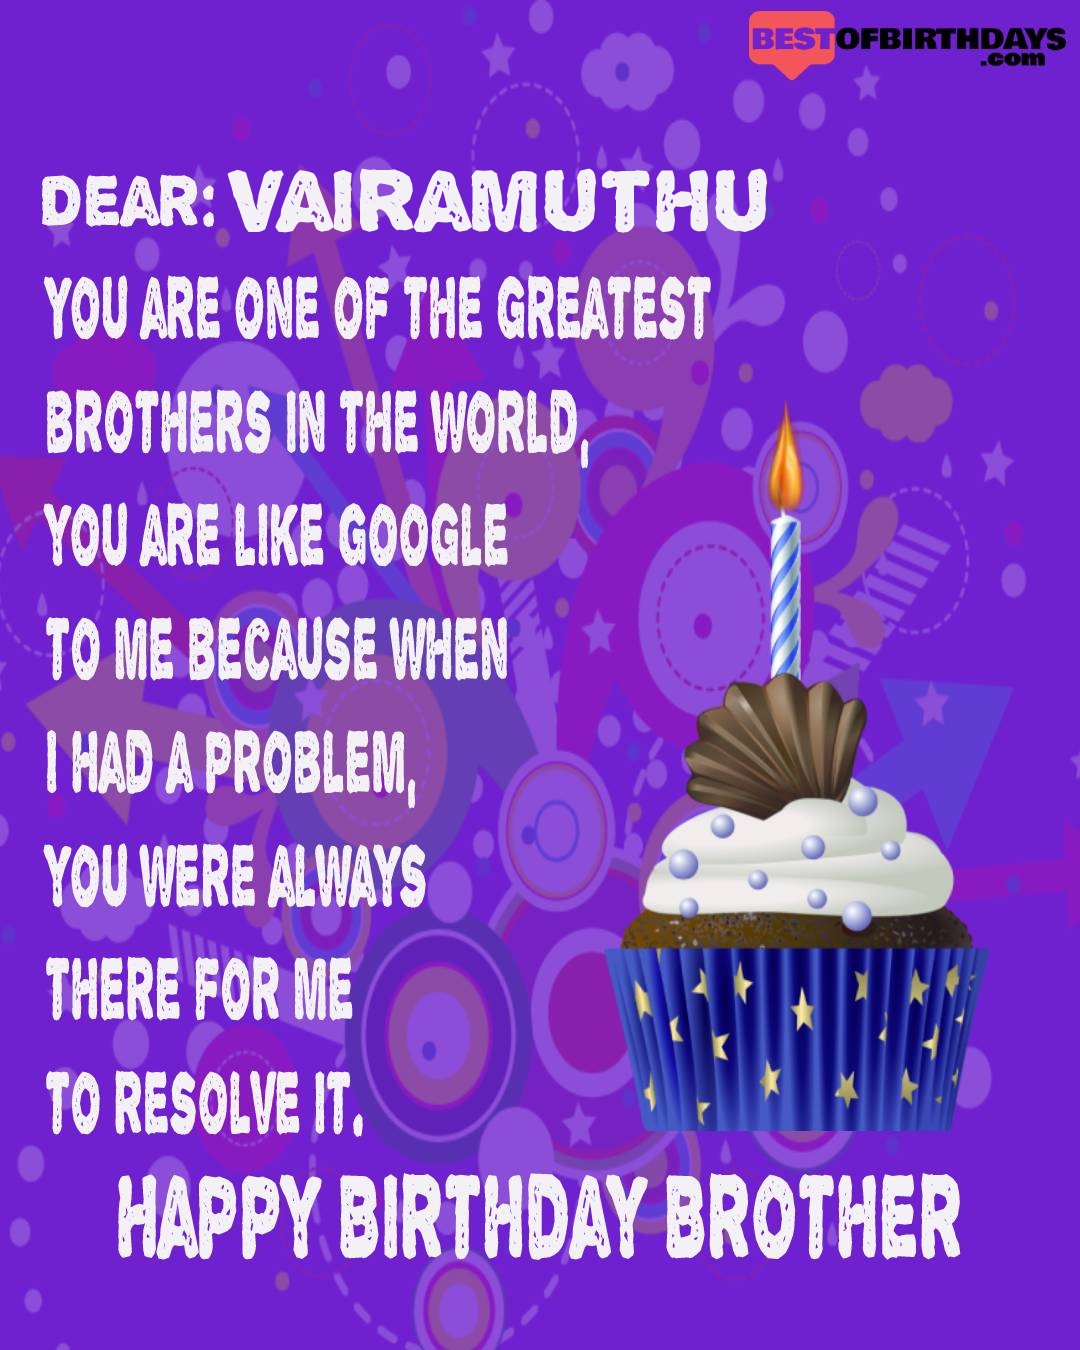 Happy birthday vairamuthu bhai brother bro